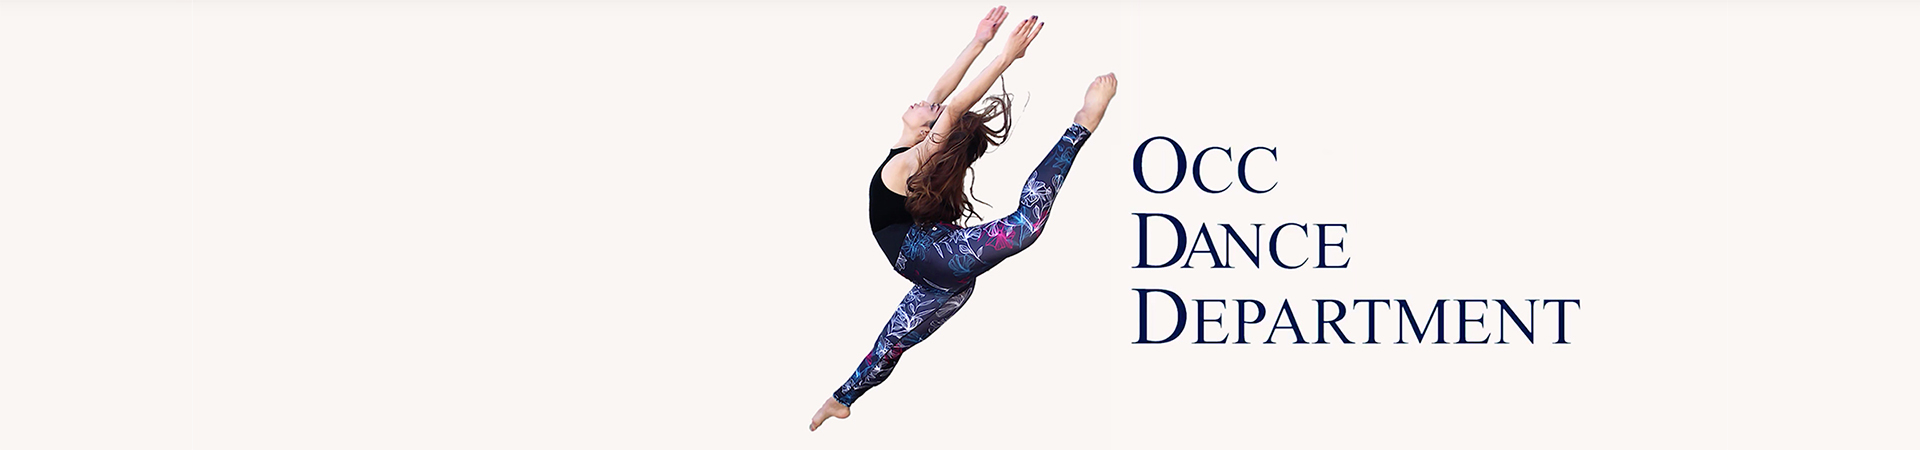 Student dancer. Text: OCC Dance Department